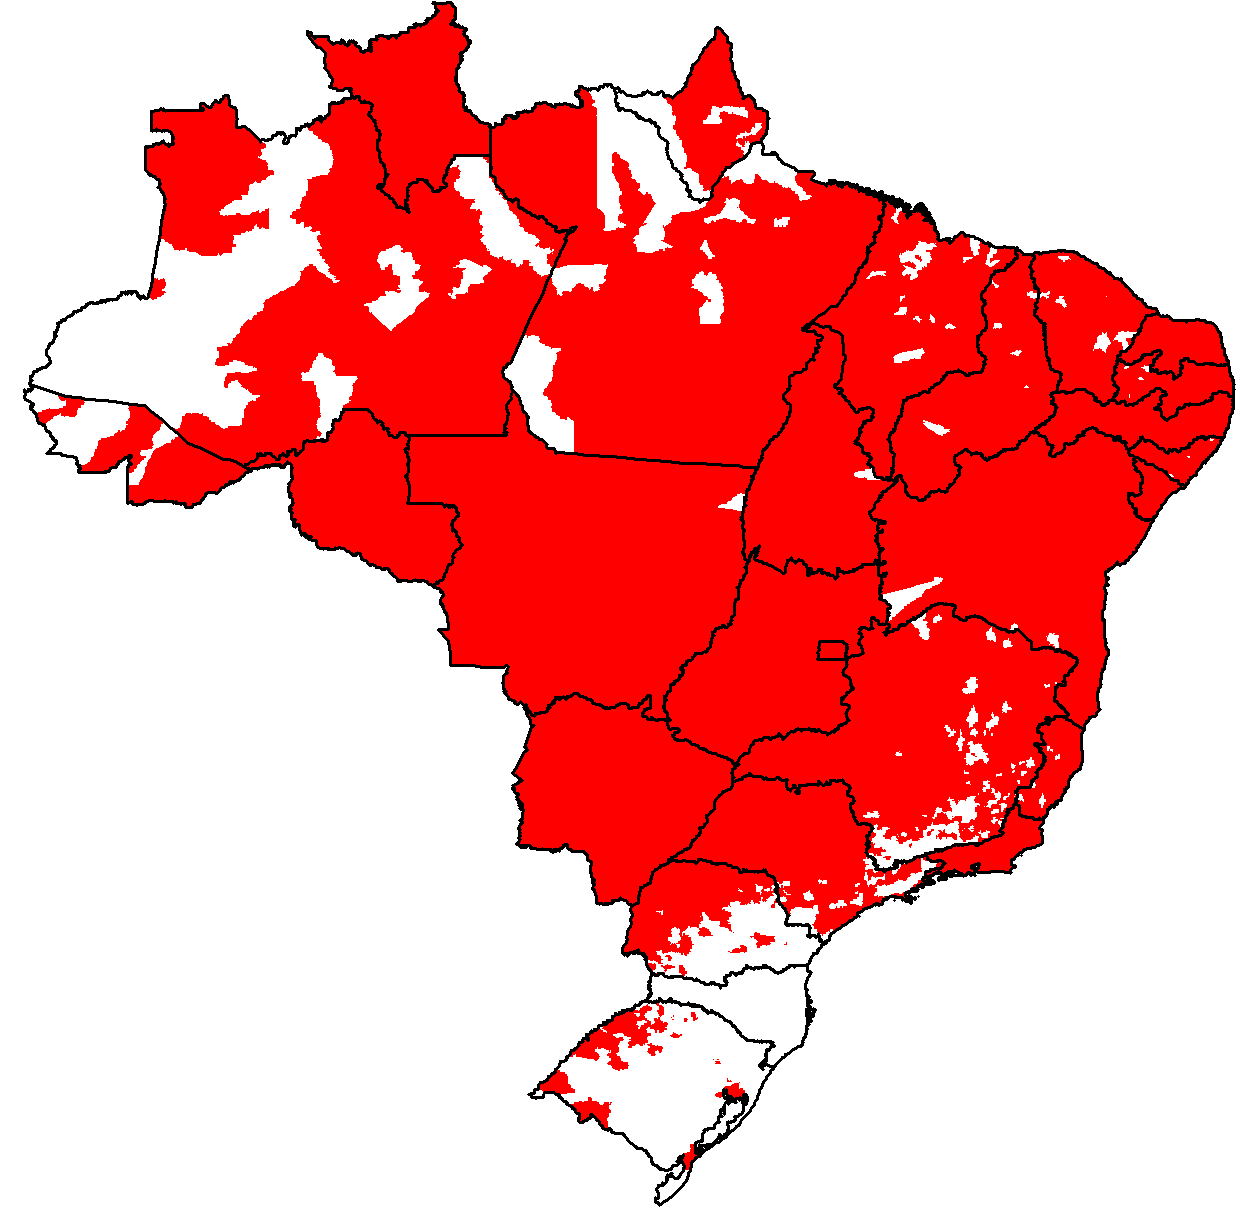 Número de municípios brasileiros infestados por Aedes